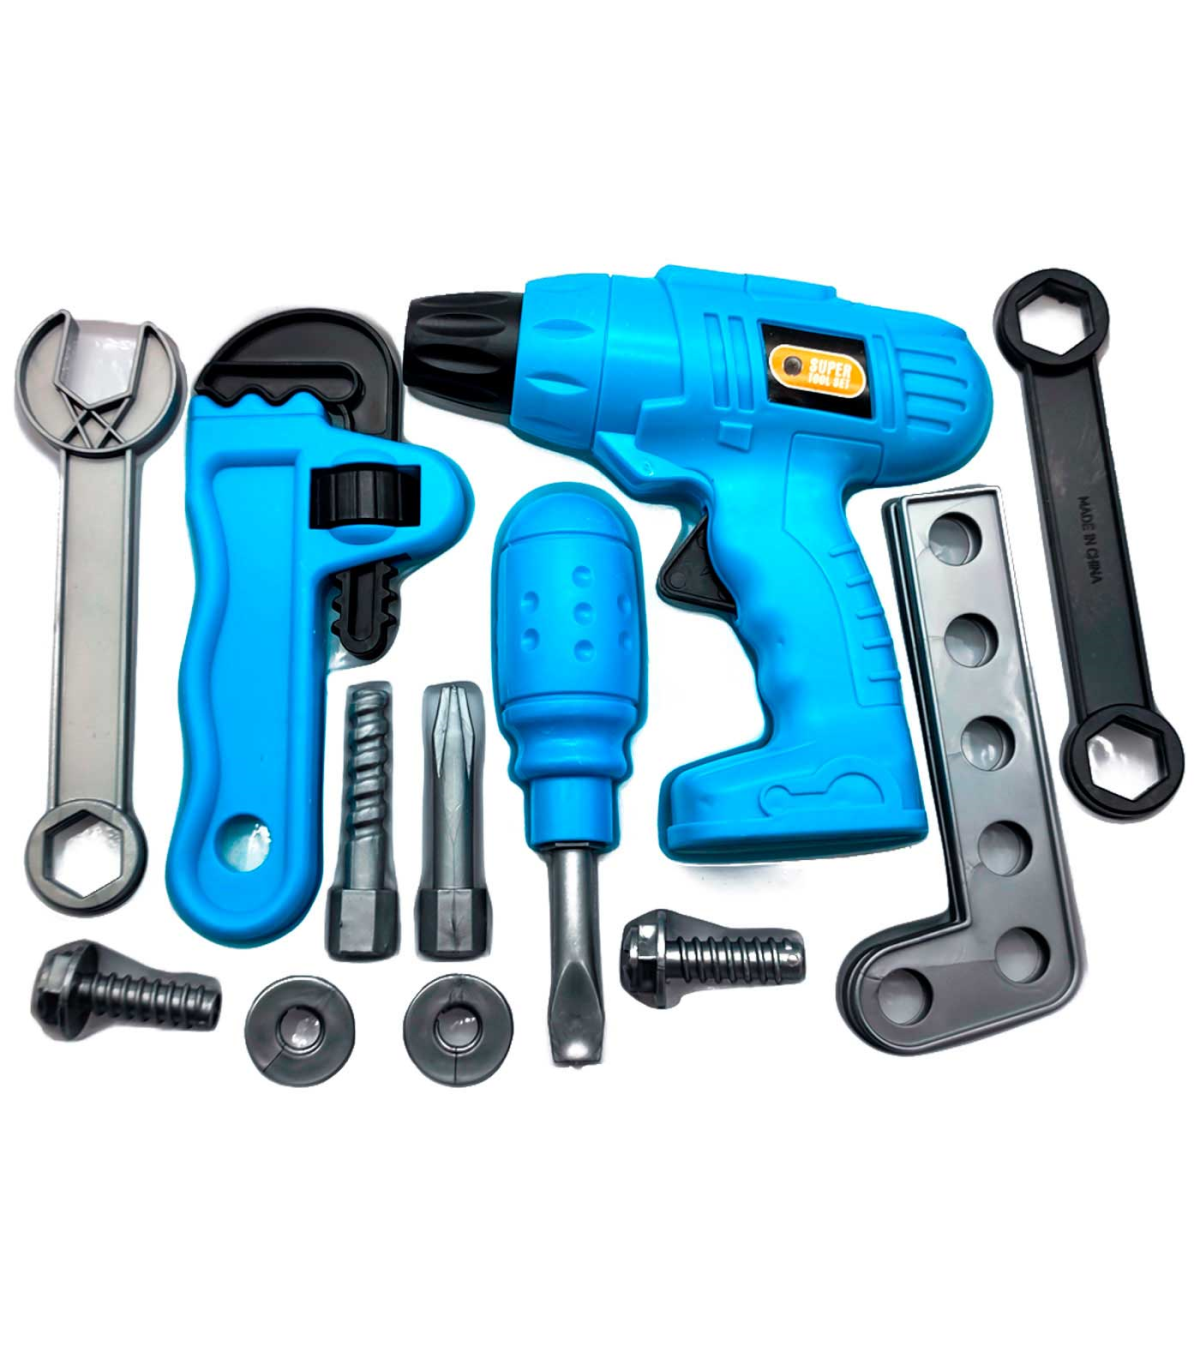 Tradineur - Set de herramientas para jugar - Incluye: tornillos,  destornillador, llaves, taladro, etc. - Fabricado en plástico r